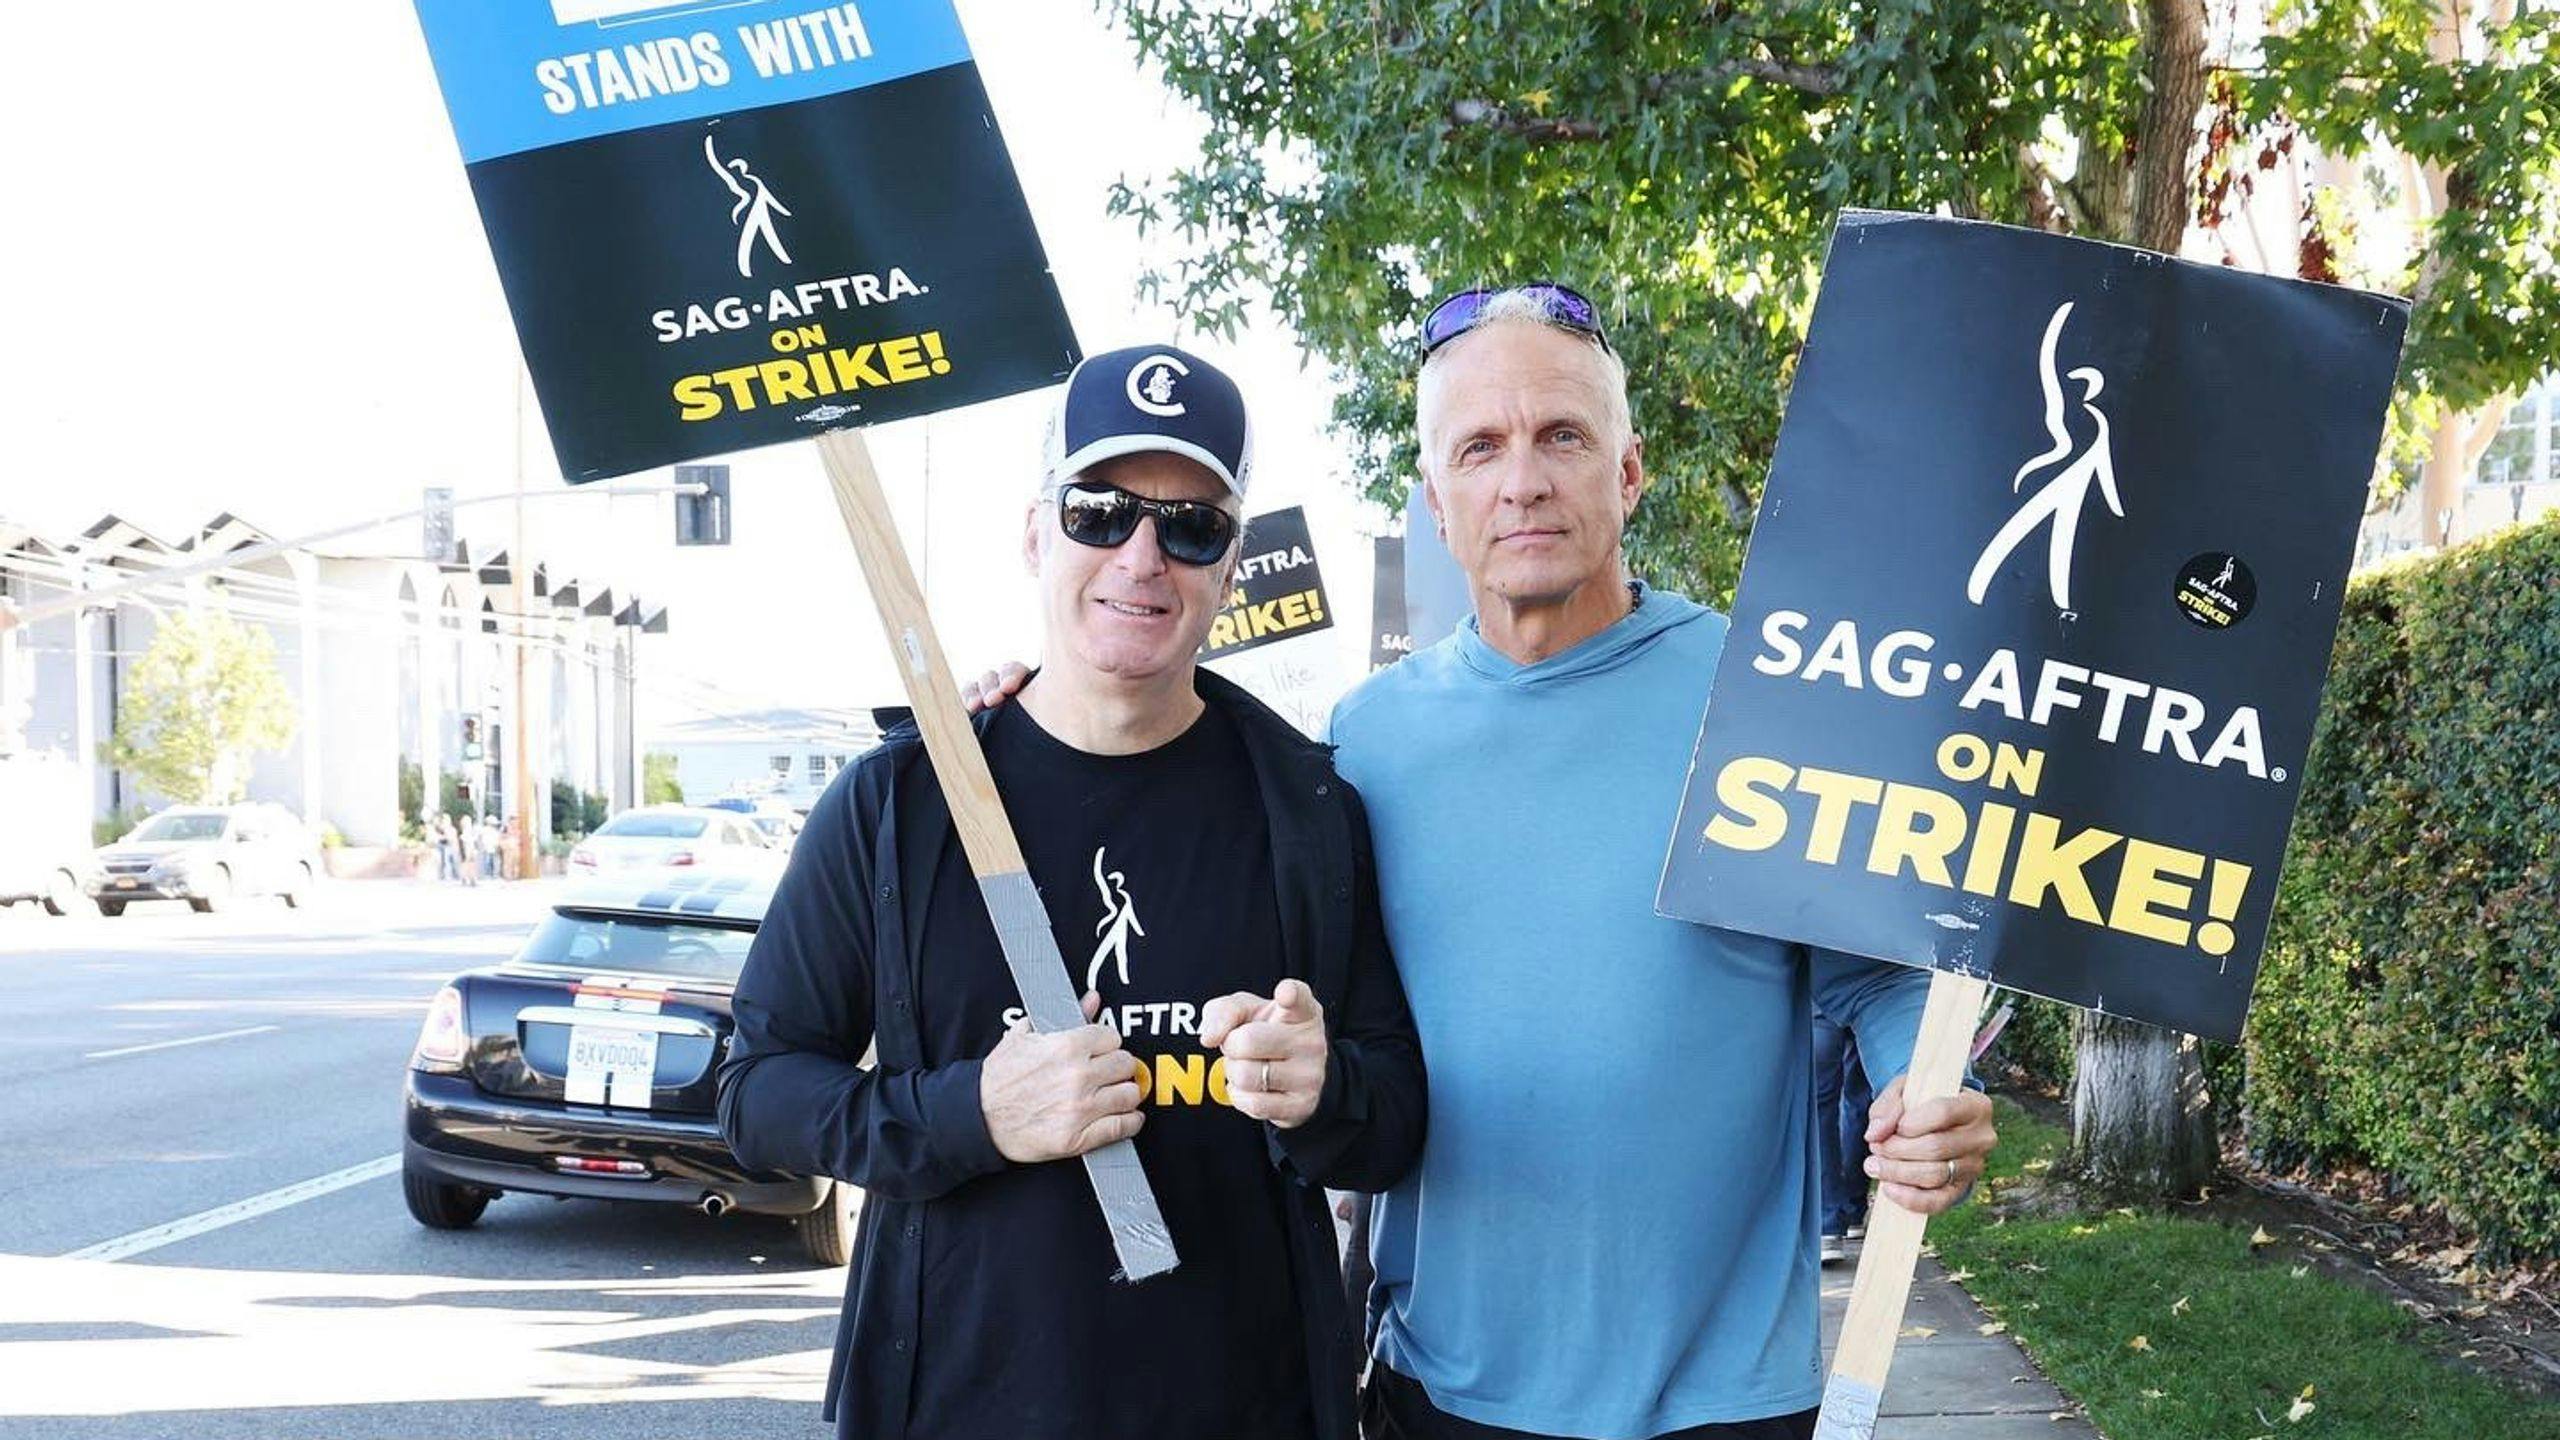 Los actores Bob Odenkirk y Patrick Fabian, de la serie 'Better Call Saul', en un piquete de la huelga